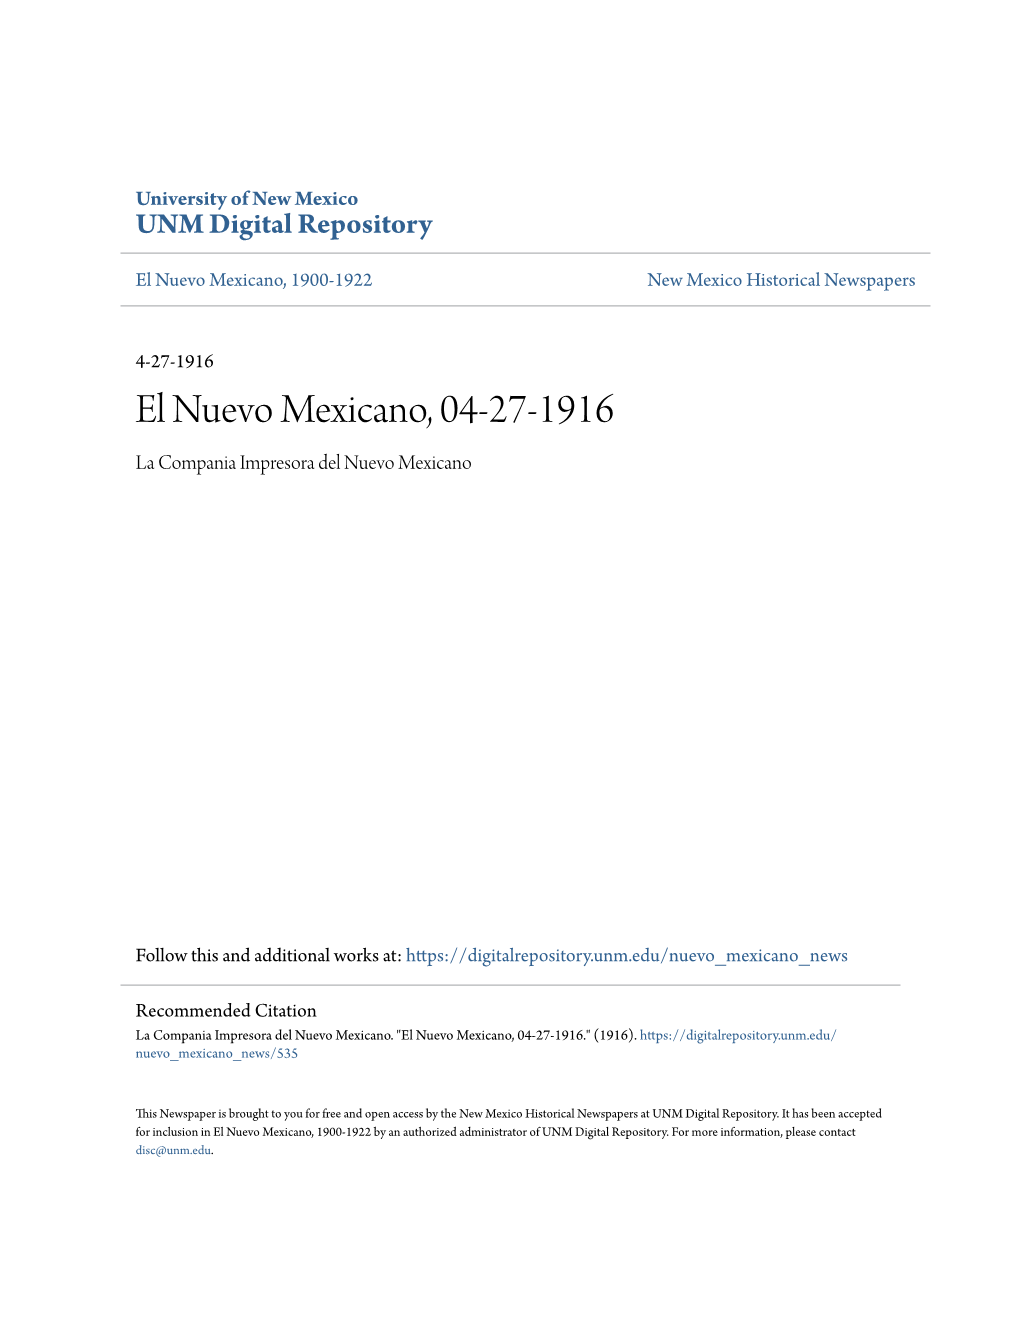 El Nuevo Mexicano, 04-27-1916 La Compania Impresora Del Nuevo Mexicano